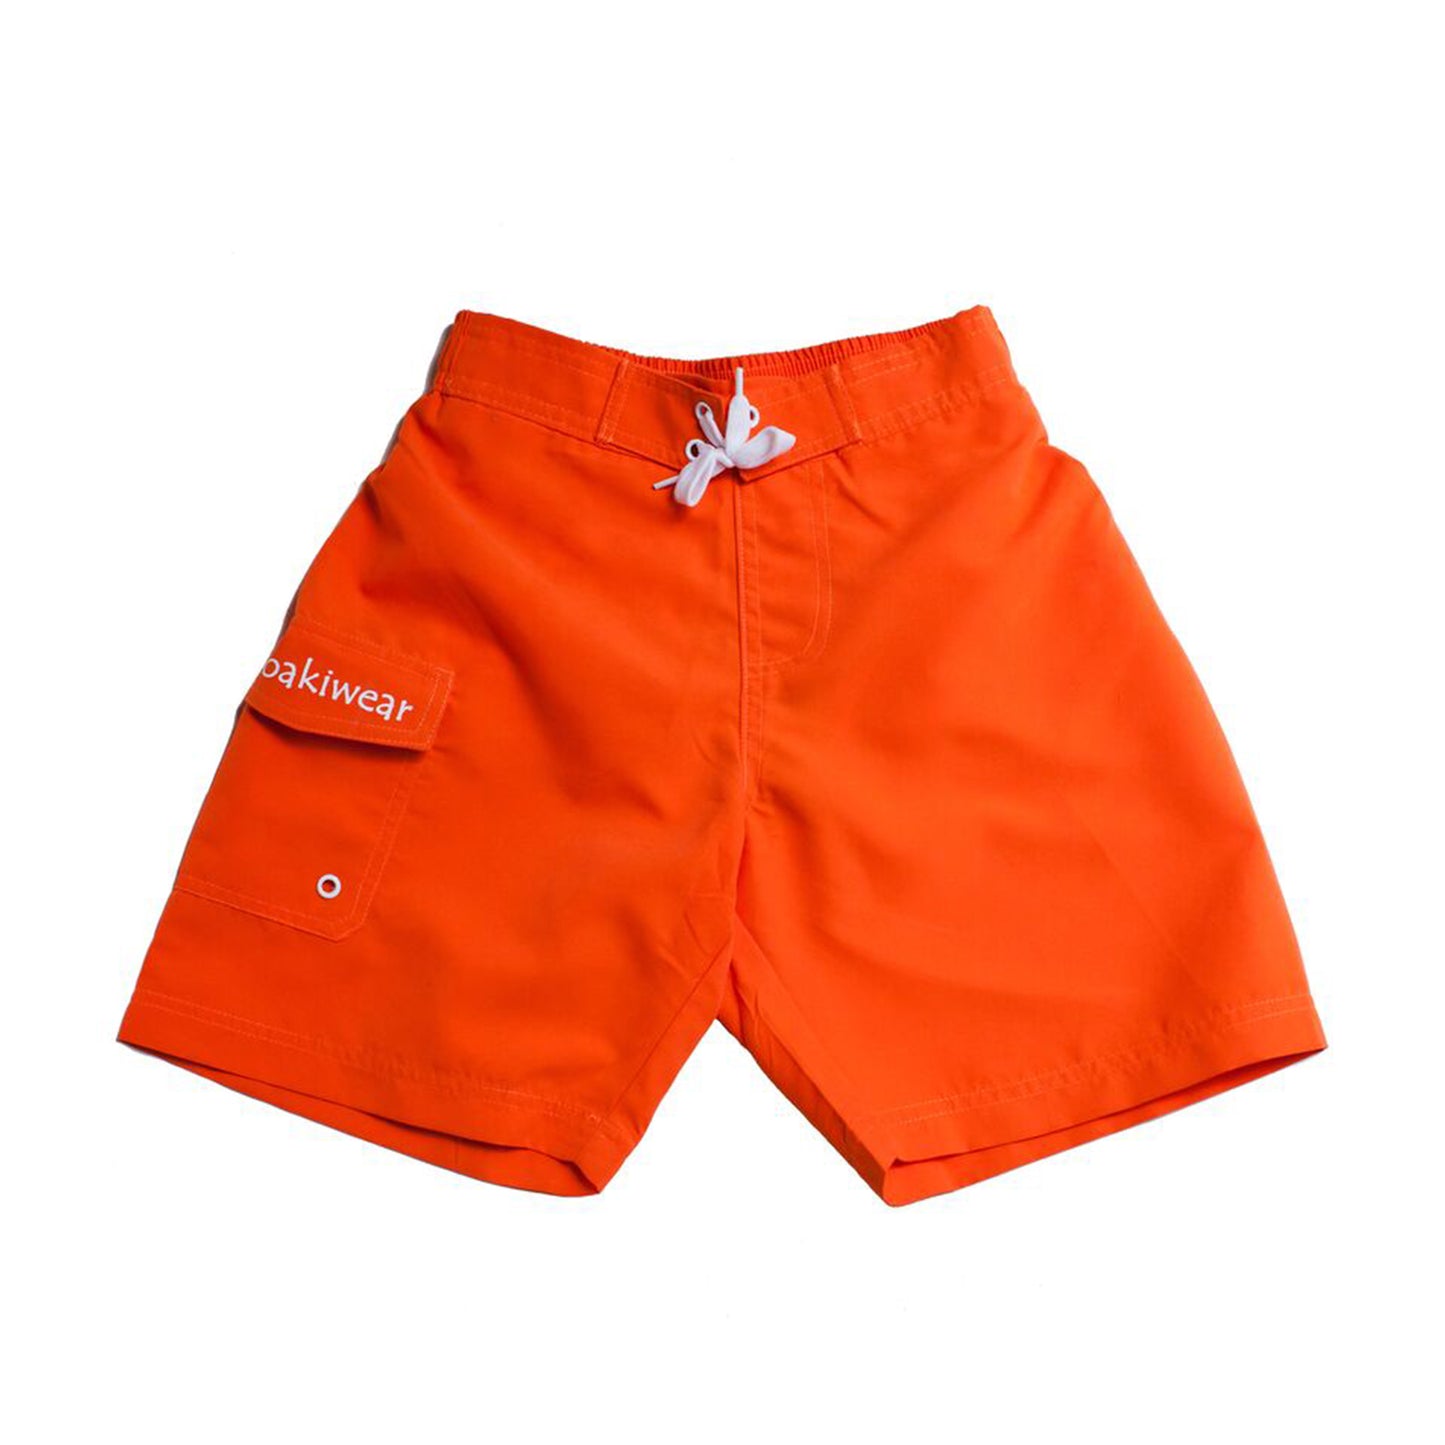 Oakiwear Swim Board Water Shorts Boys Girls Trunks, Orange